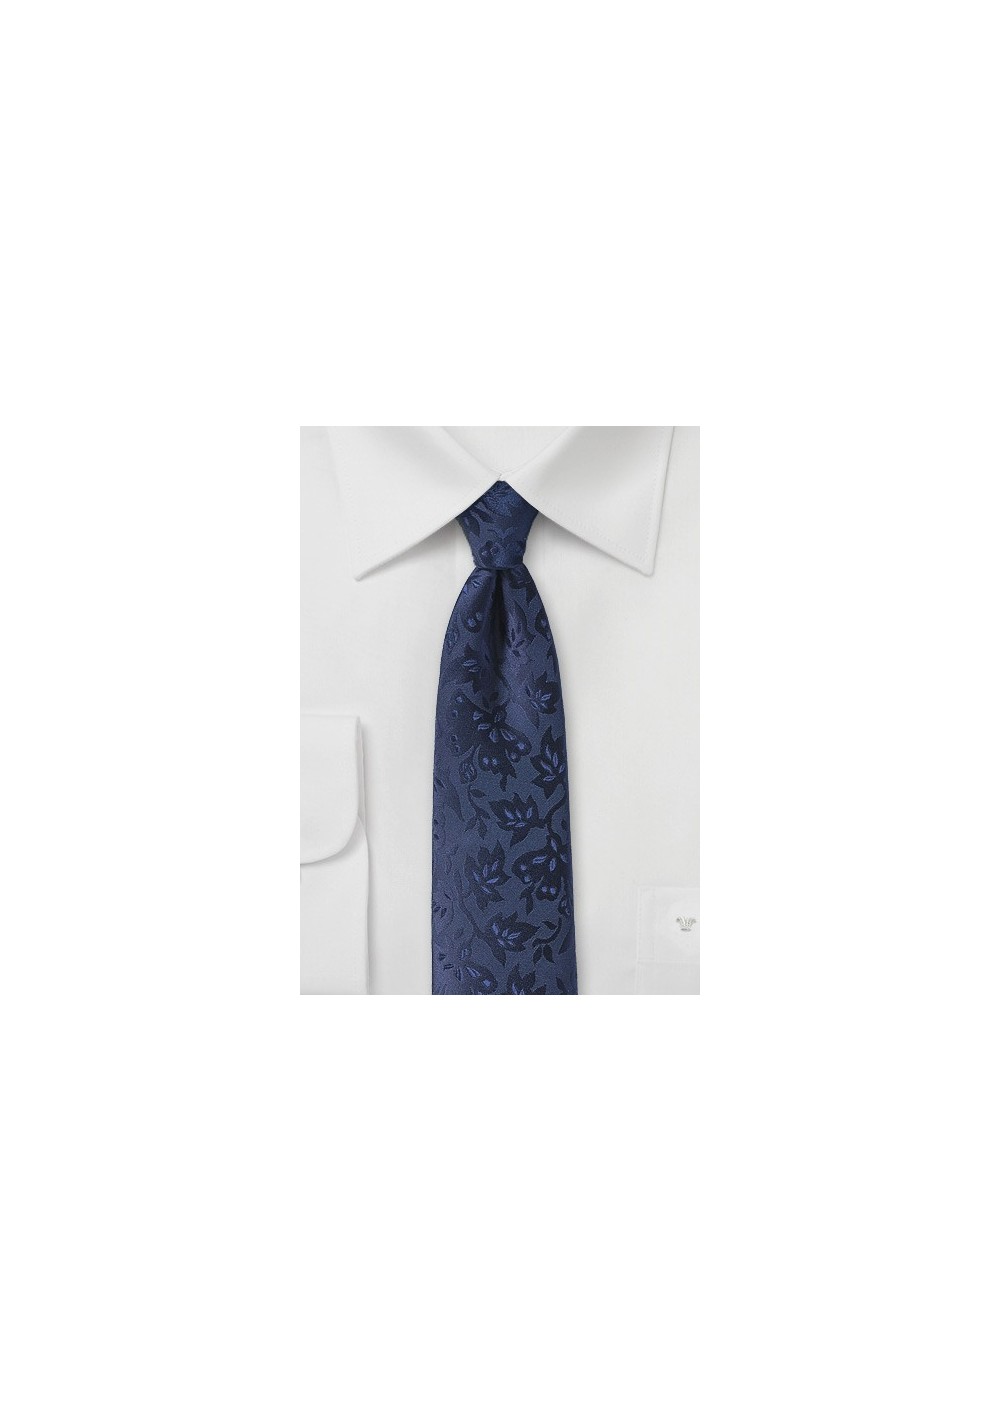 Floral Silk Tie in Midnight Blue